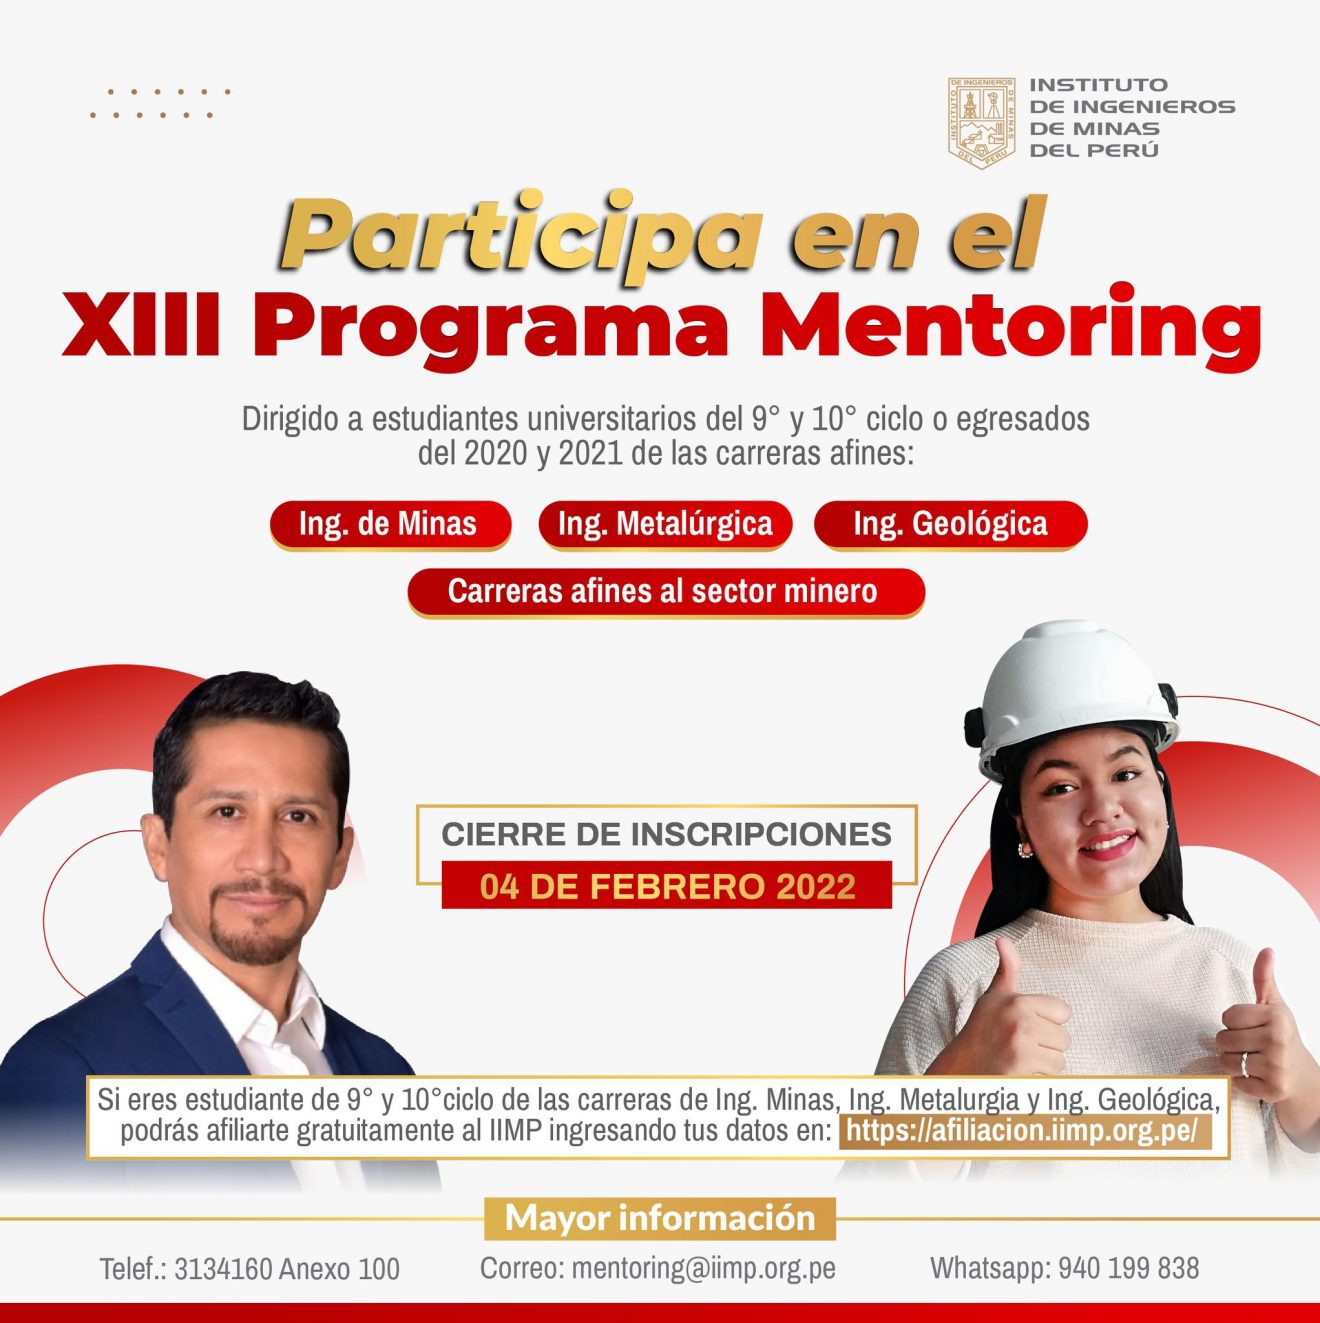 IIMP - Programa Mentoring “Encaminando al futuro”